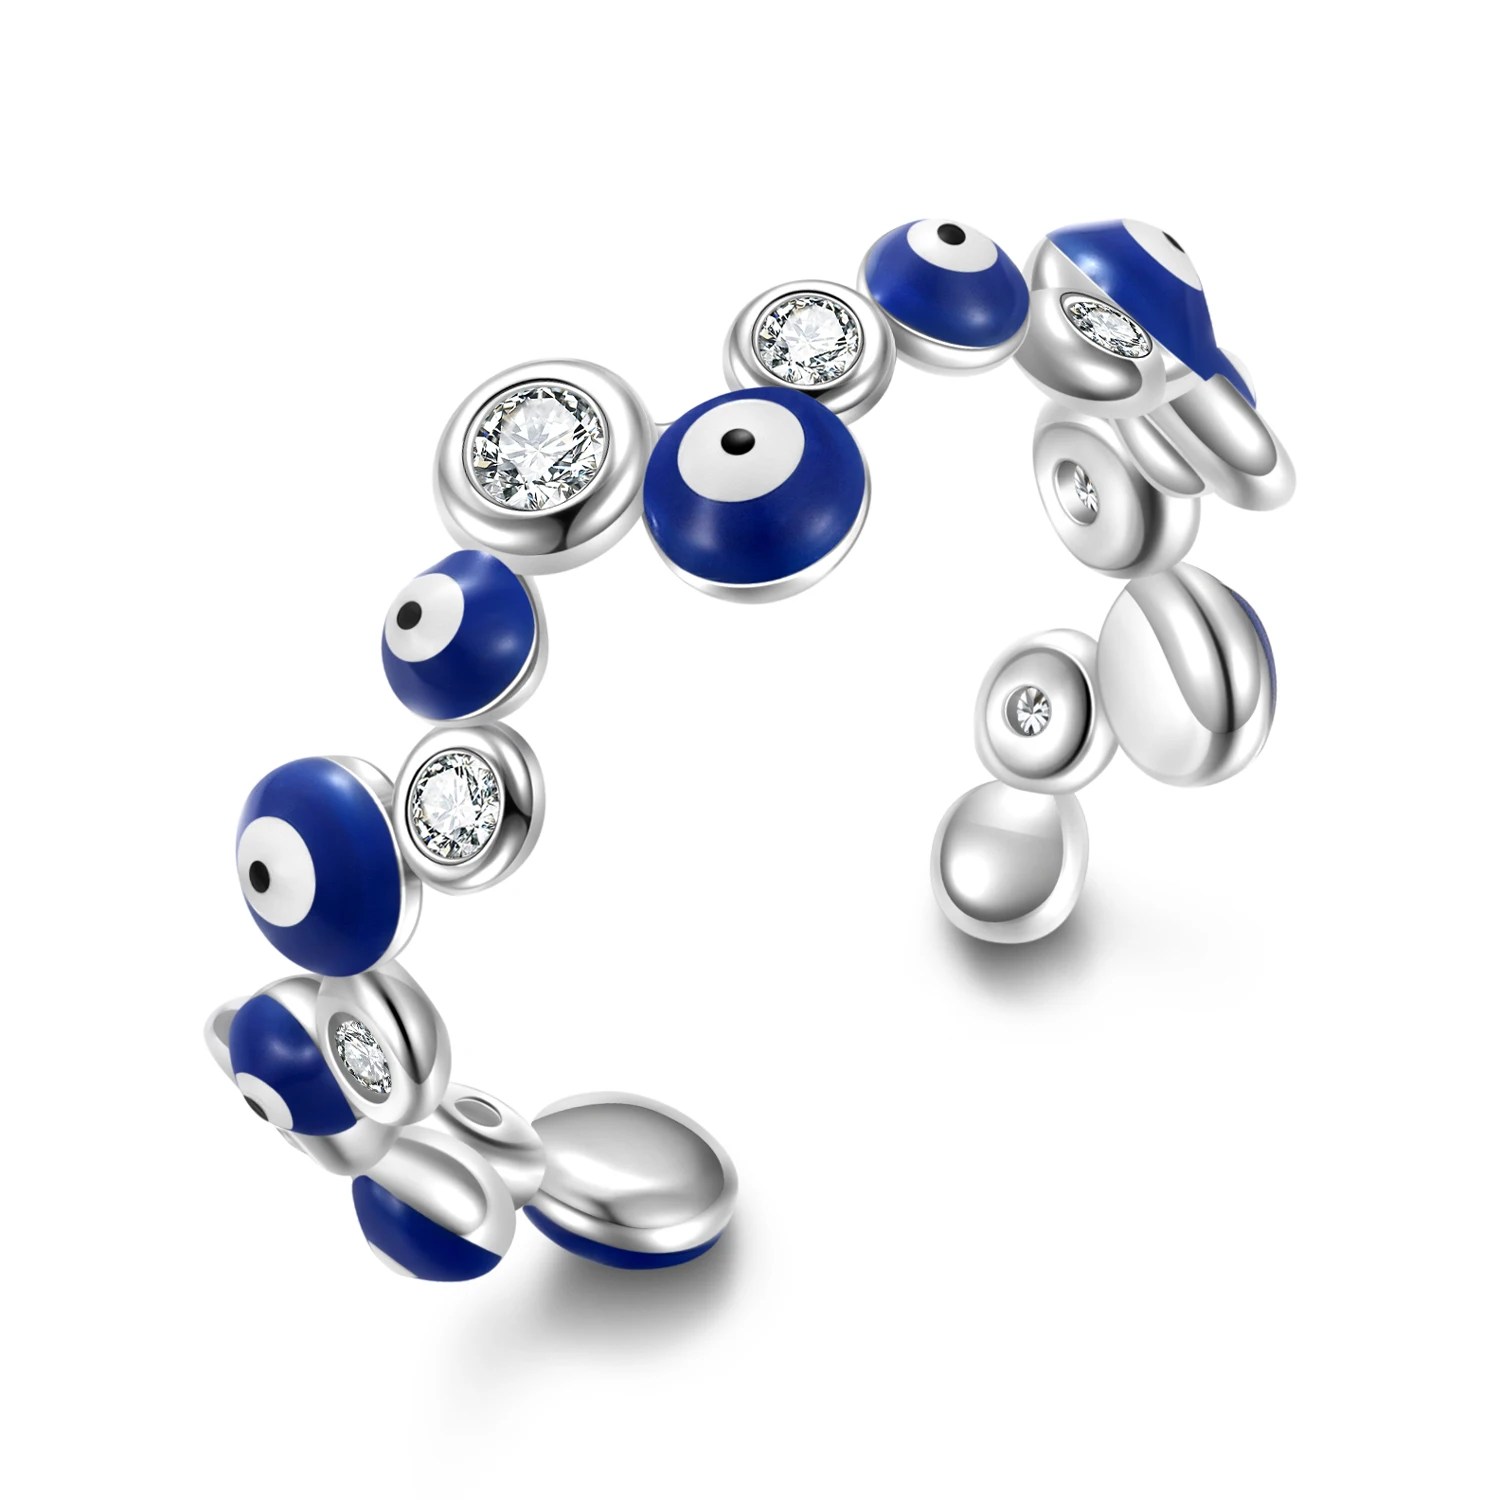 

Оригинальное серебряное белое циркониевое бесчисленное кольцо на удачу с голубыми глазами демона для женщин и мужчин регулируемое кольцо эффектные женские ювелирные изделия